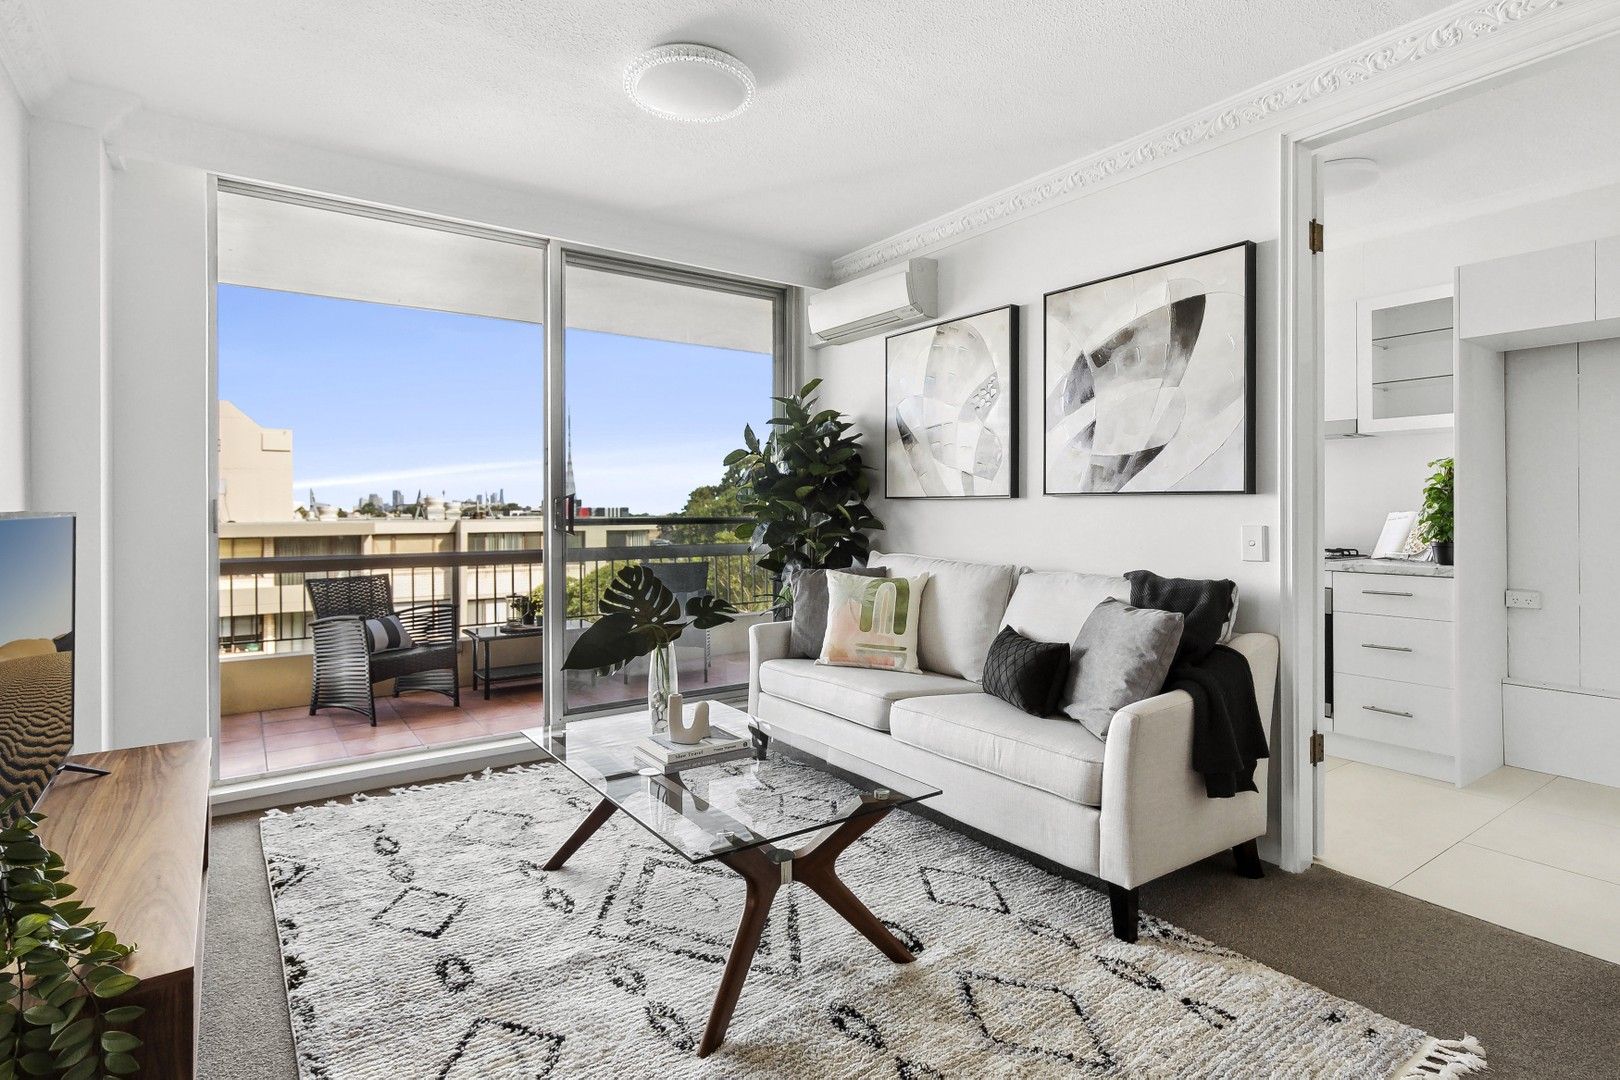 2 bedrooms Apartment / Unit / Flat in 705/8 Broughton Road ARTARMON NSW, 2064